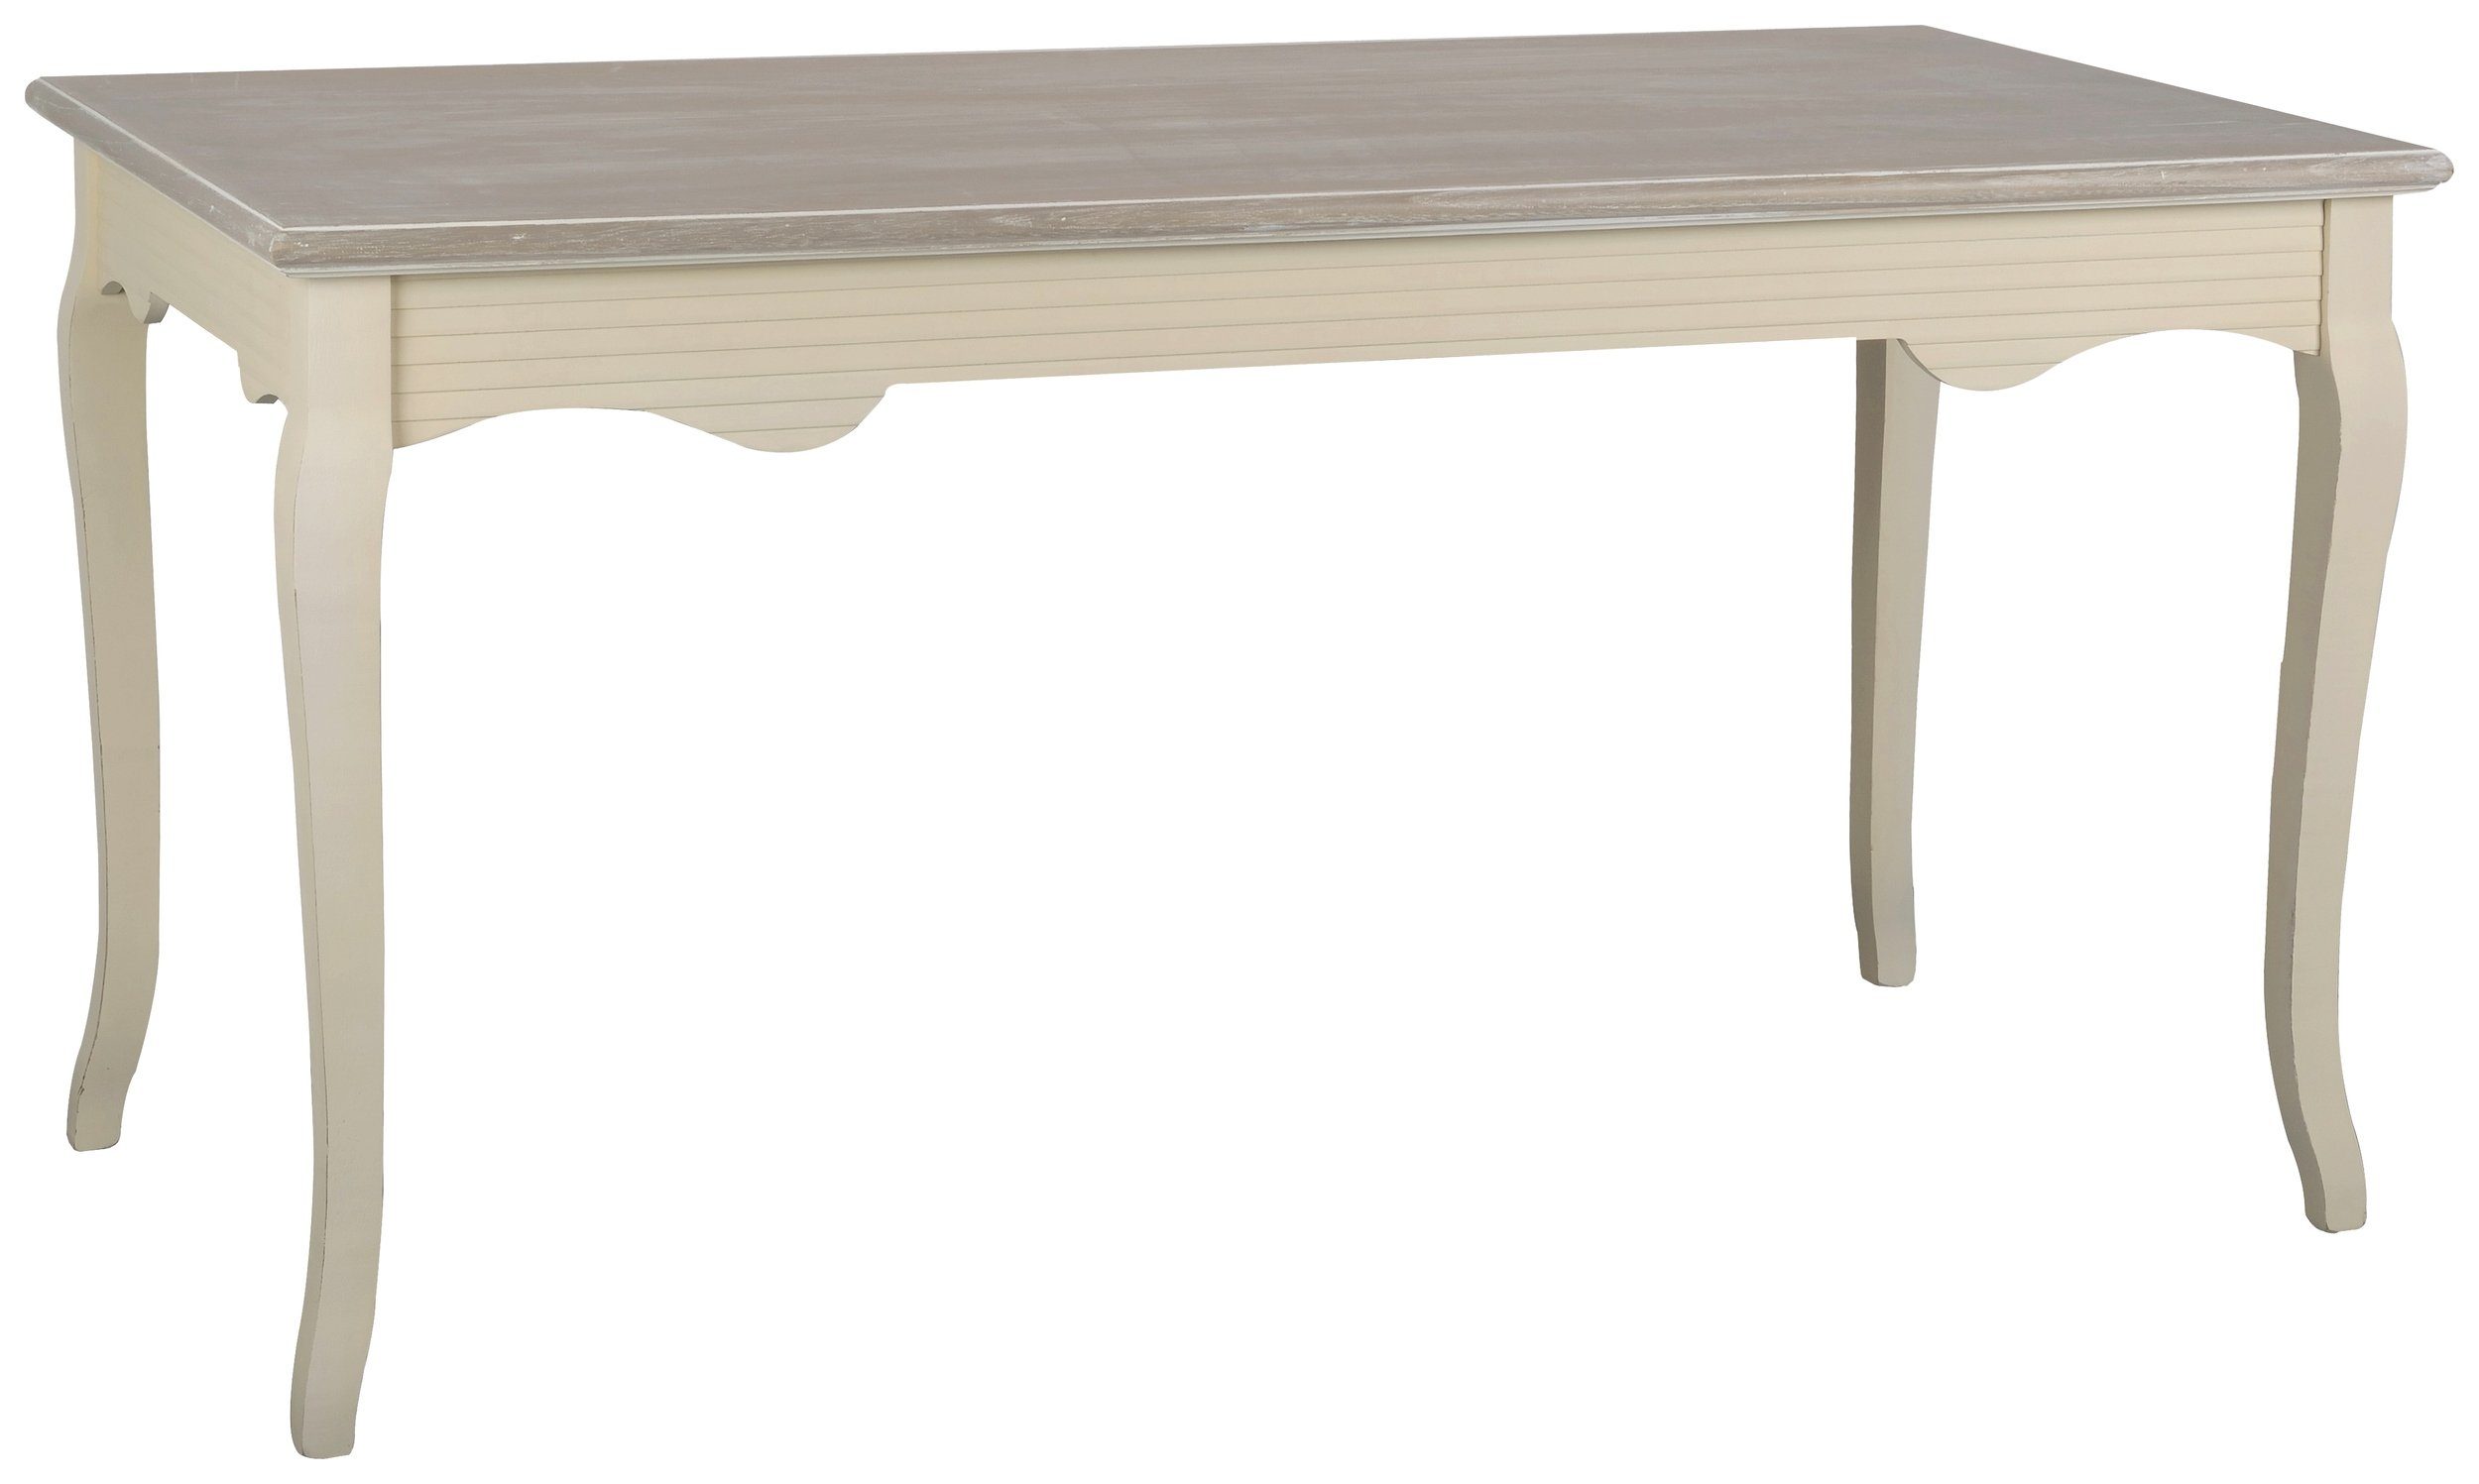 99rooms Esstisch Pesaro Pappel Creme Hellbraun (Esstisch, Tisch), aus Massivholz, rechteckig, viel Stauraum, Landhausstil